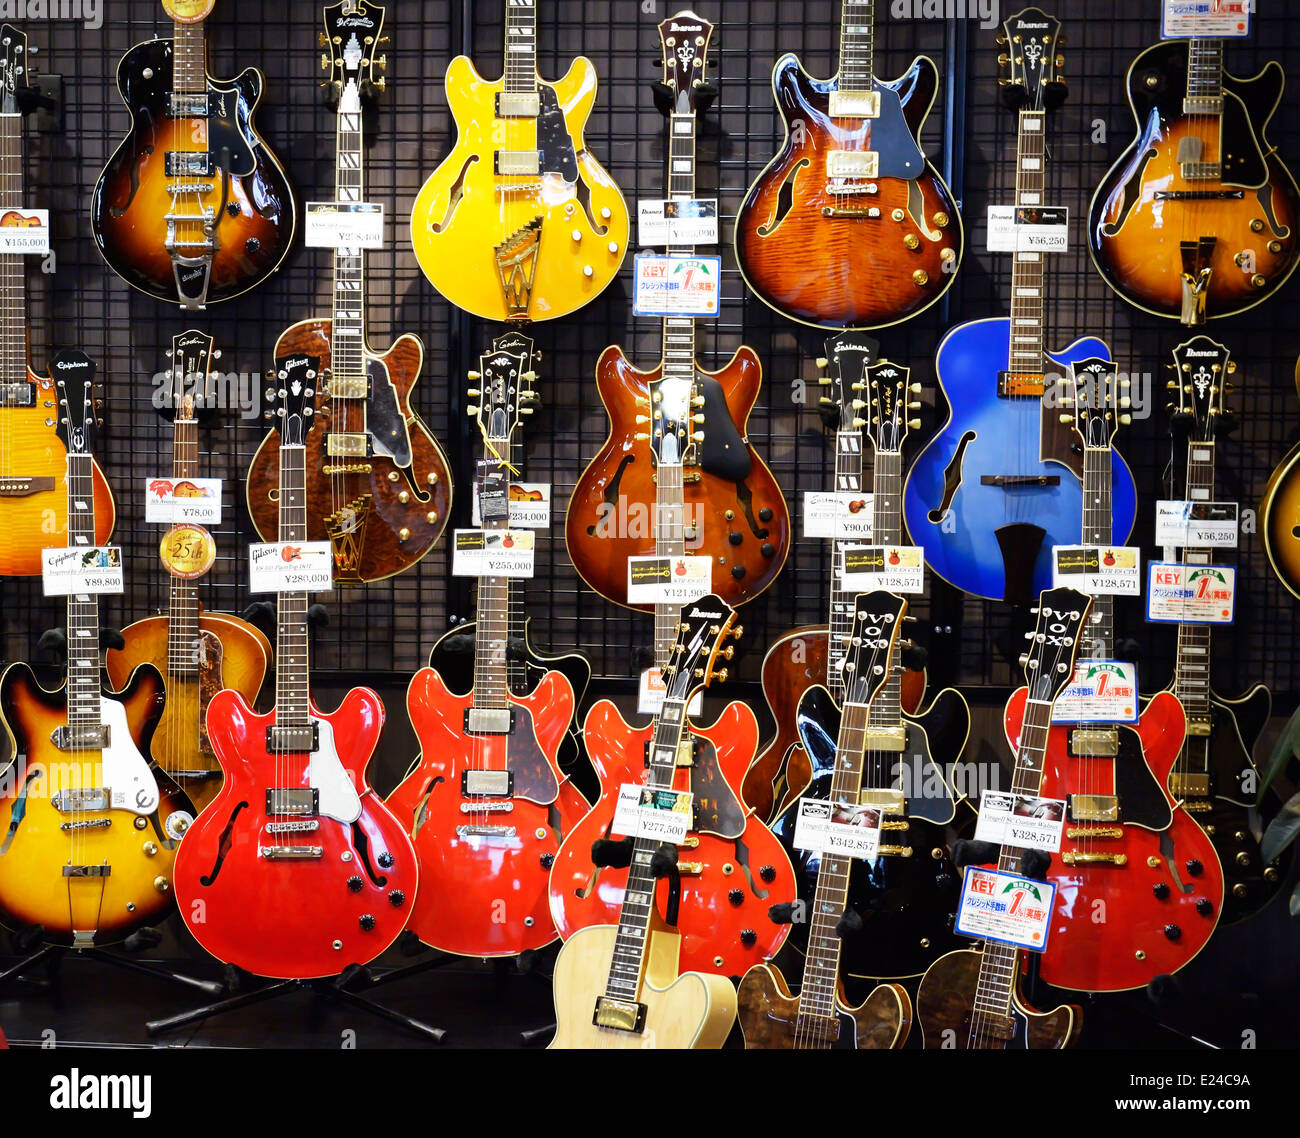 Semi-acoustic corpi cavi chitarre elettriche sul display in un negozio di musica a Tokyo in Giappone. Foto Stock